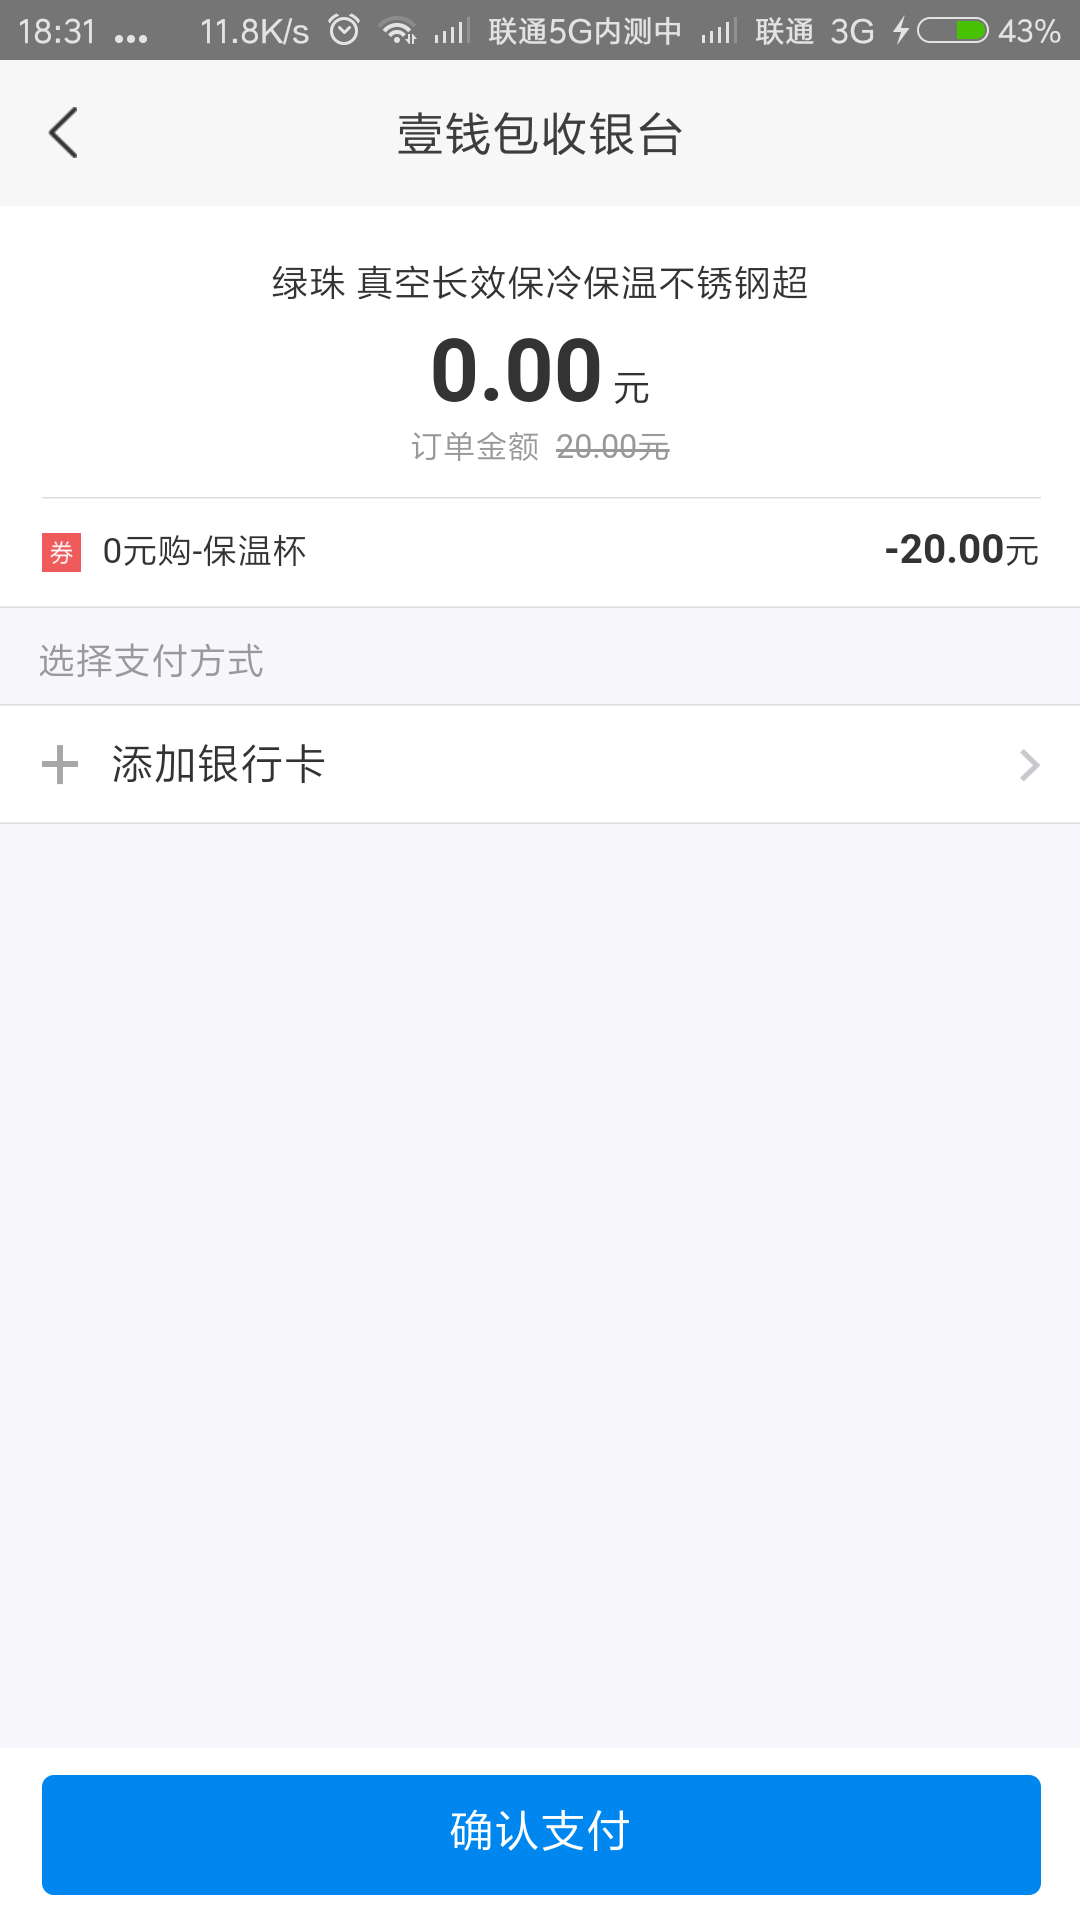 Screenshot_2018-07-24-18-31-04-192_com.paic.zhifu.wallet.activity.png